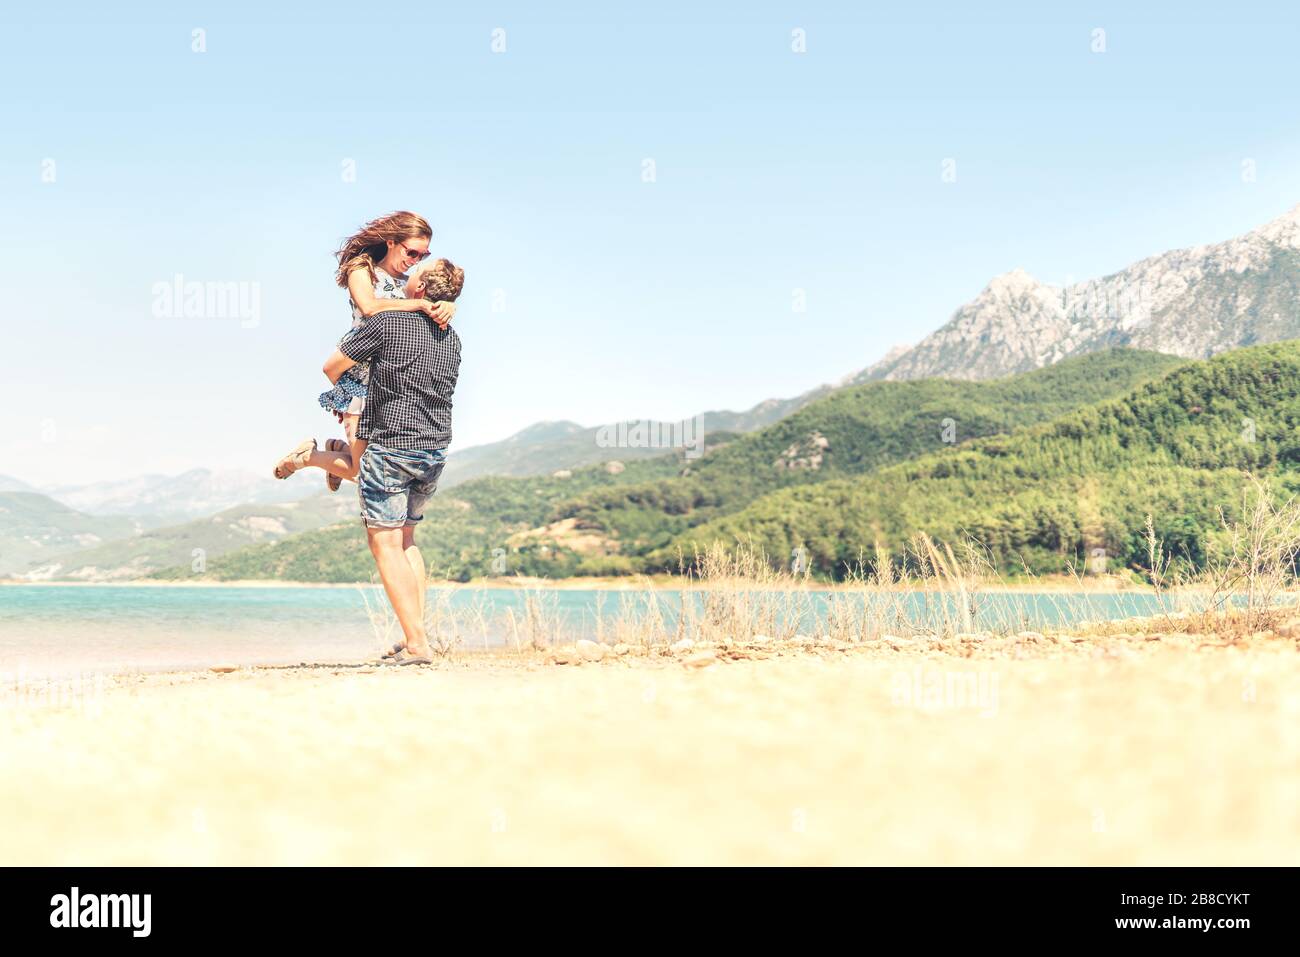 Hombre levantando a la mujer en el aire. Feliz pareja riendo de vacaciones. Paisaje de montaña. Novio llevando novia. Momento romántico después de la propuesta. Foto de stock